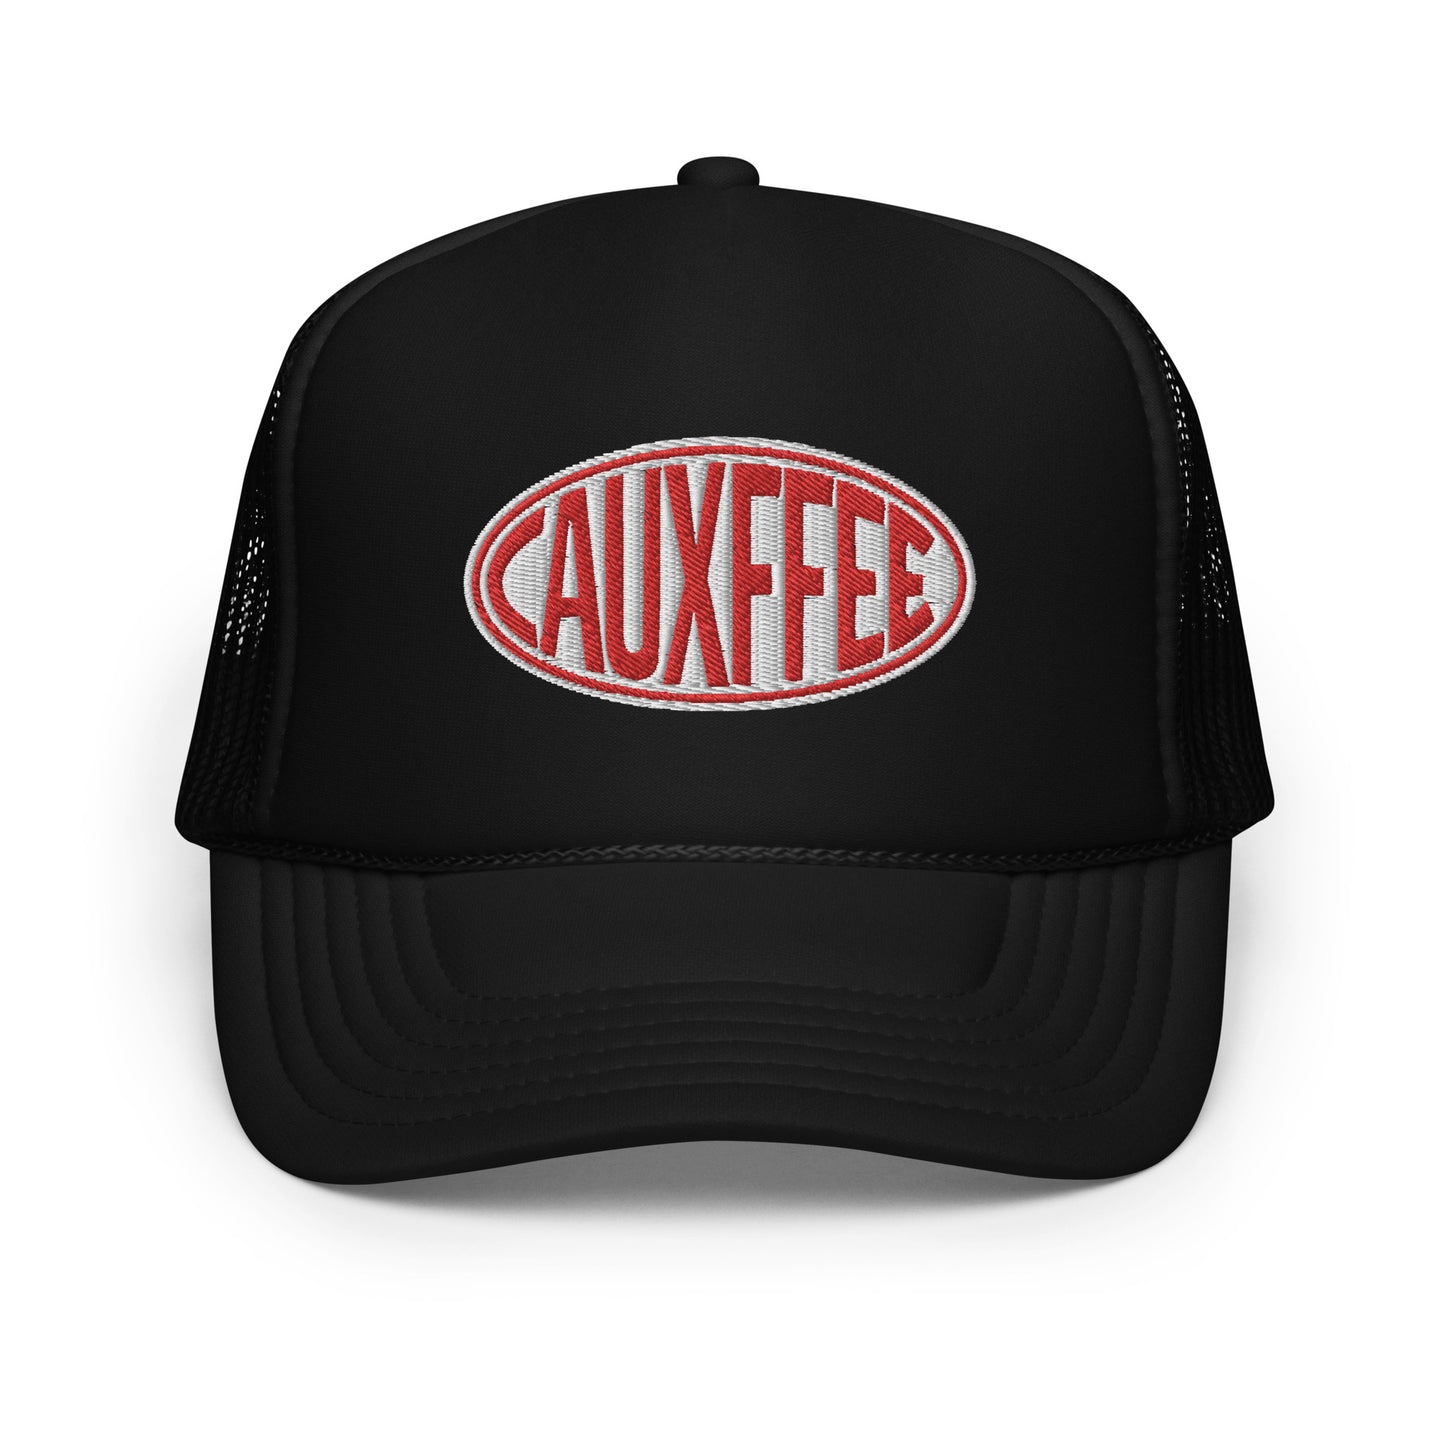 Cauxffee Foam Trucker Hat